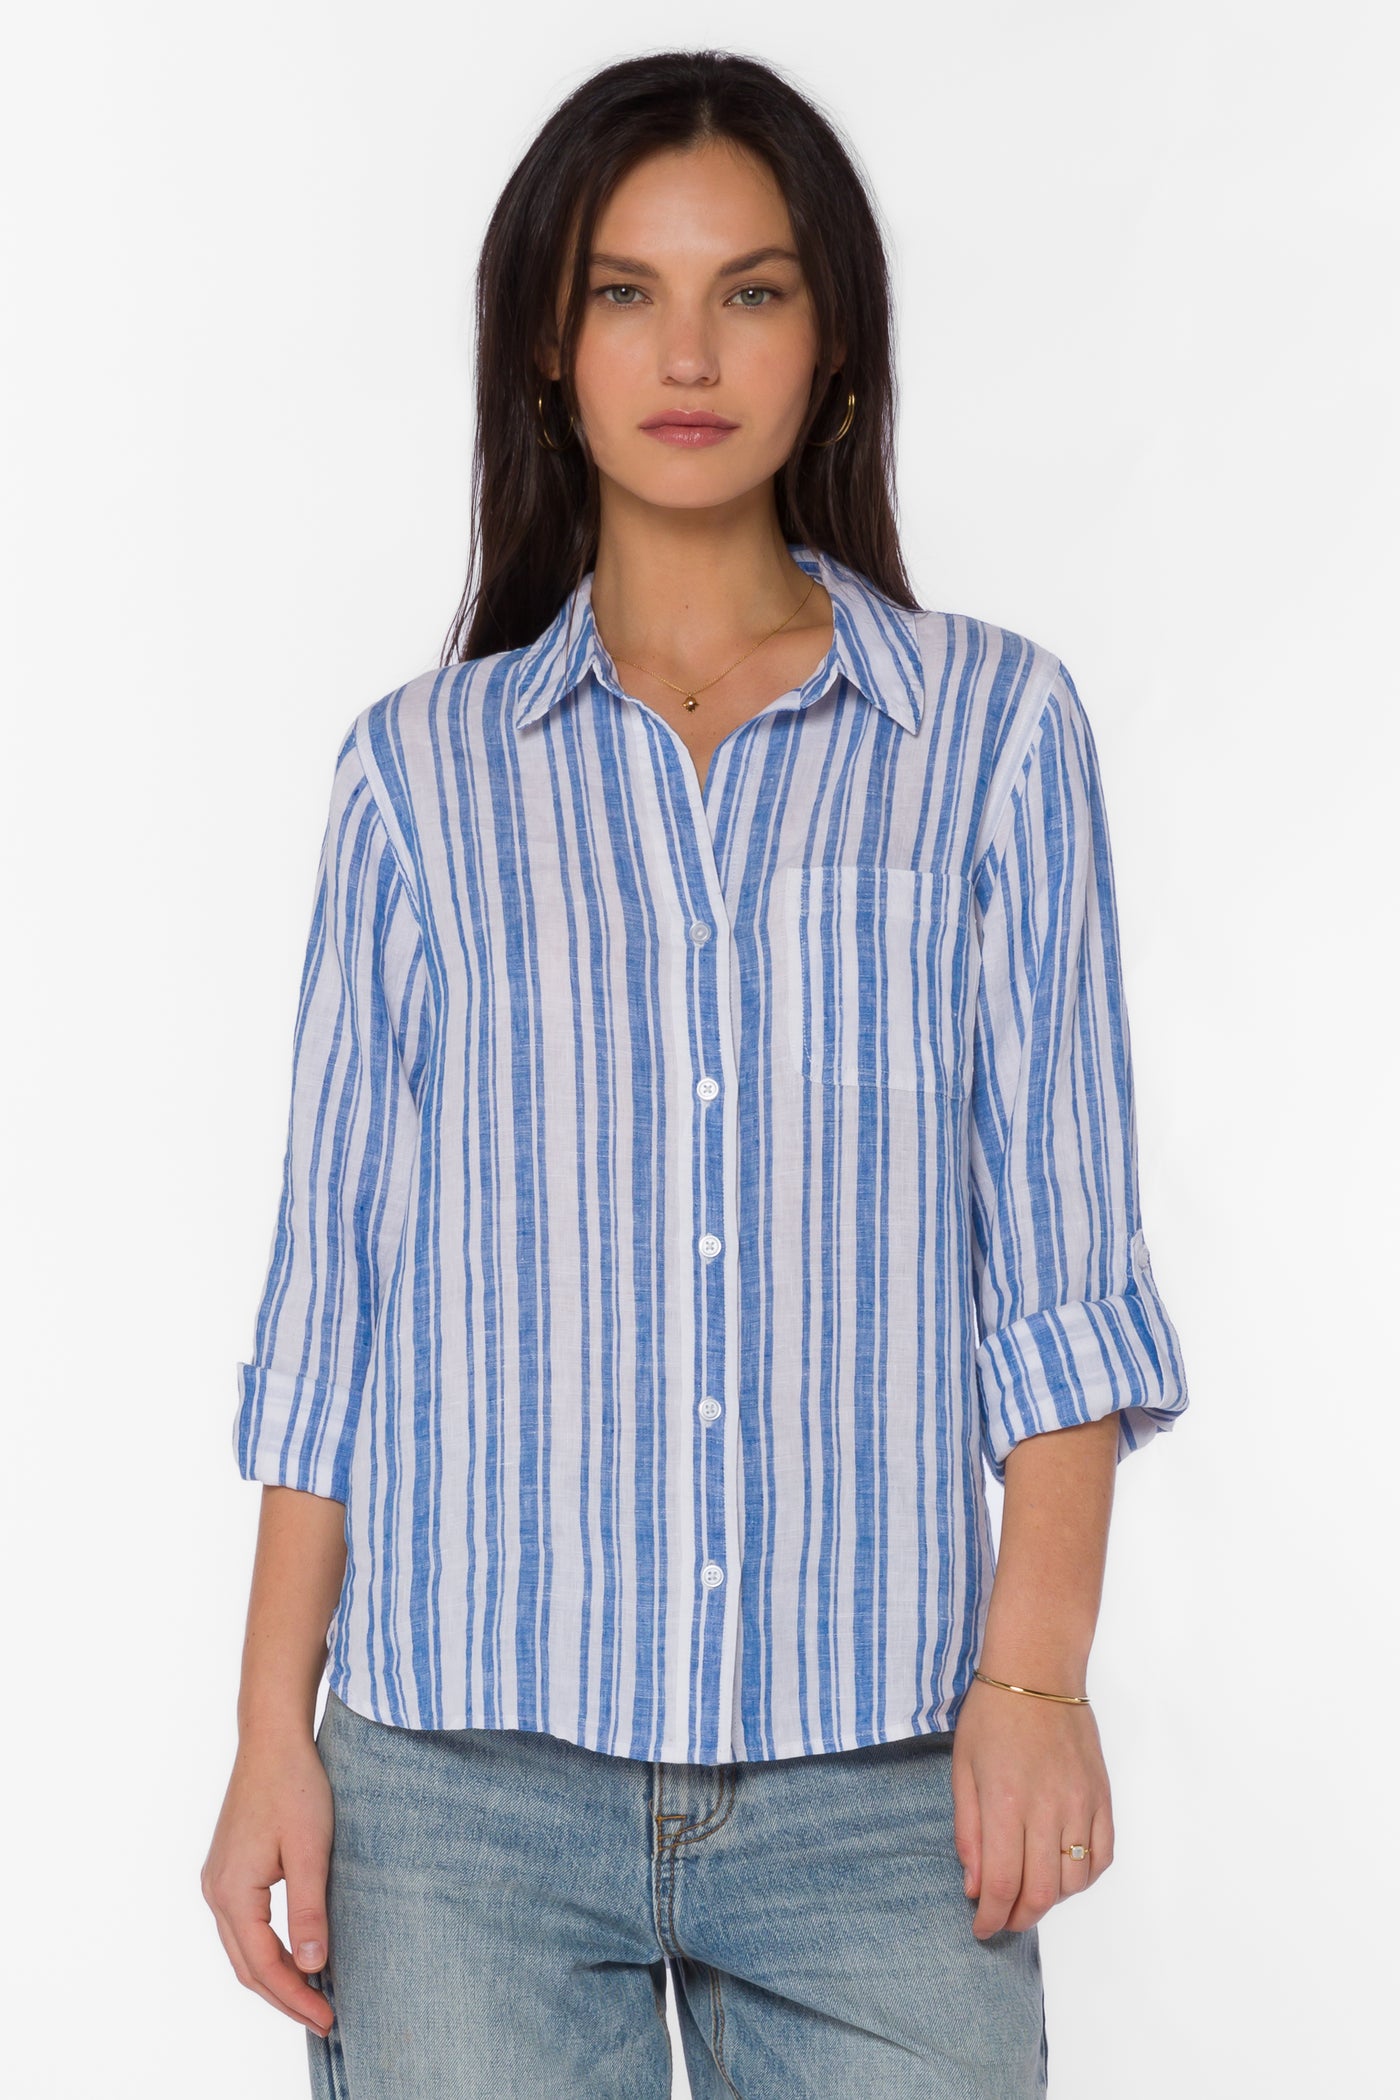 Elisa Blue Stripe Shirt - Tops - Velvet Heart Clothing